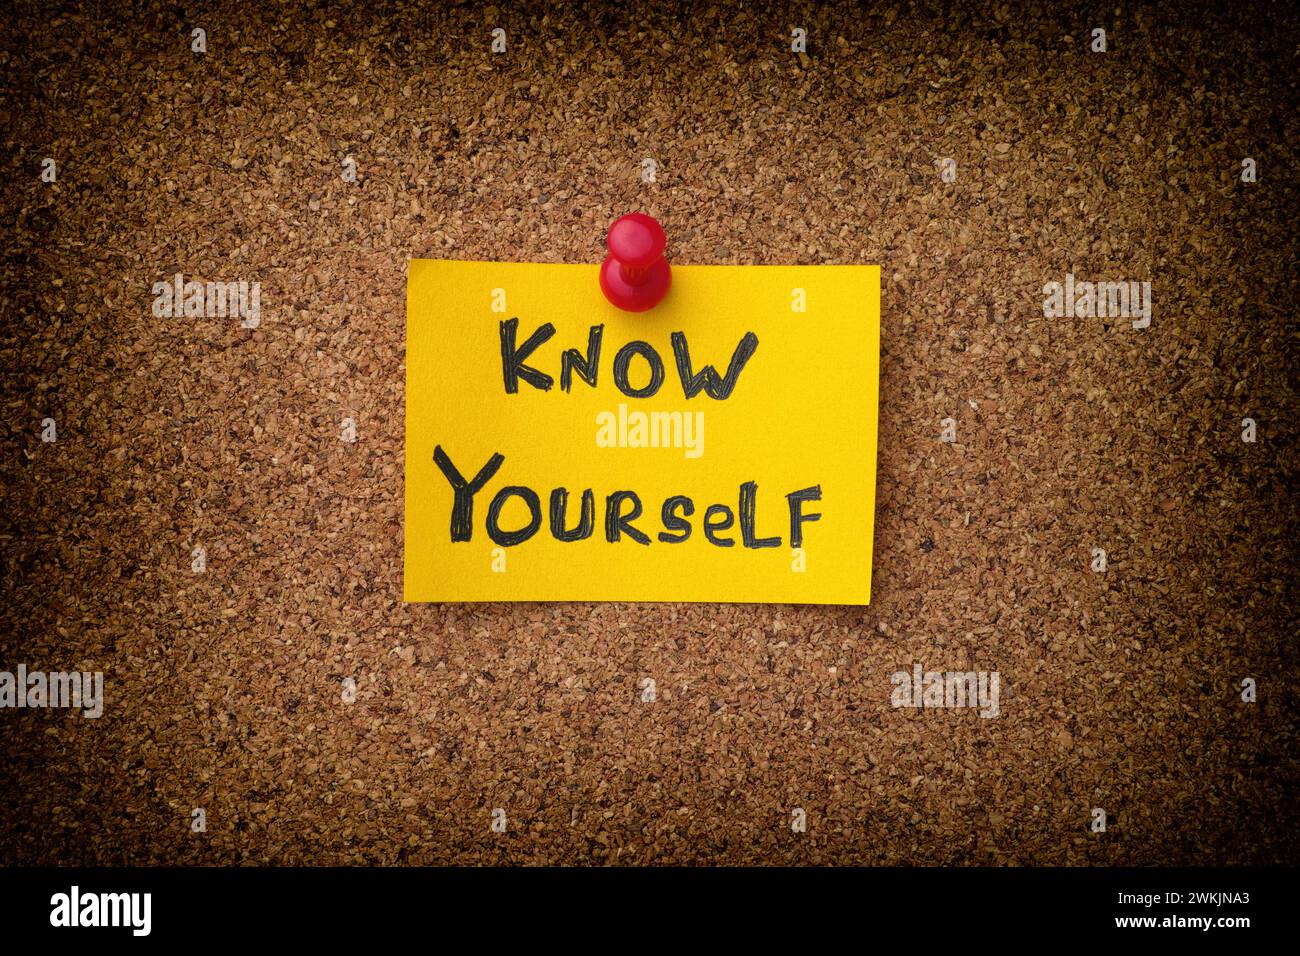 Eine gelbe Papiernote mit dem Satz "Know Yourself" drauf, die an ein Korkbrett geheftet ist. Nahaufnahme. Stockfoto